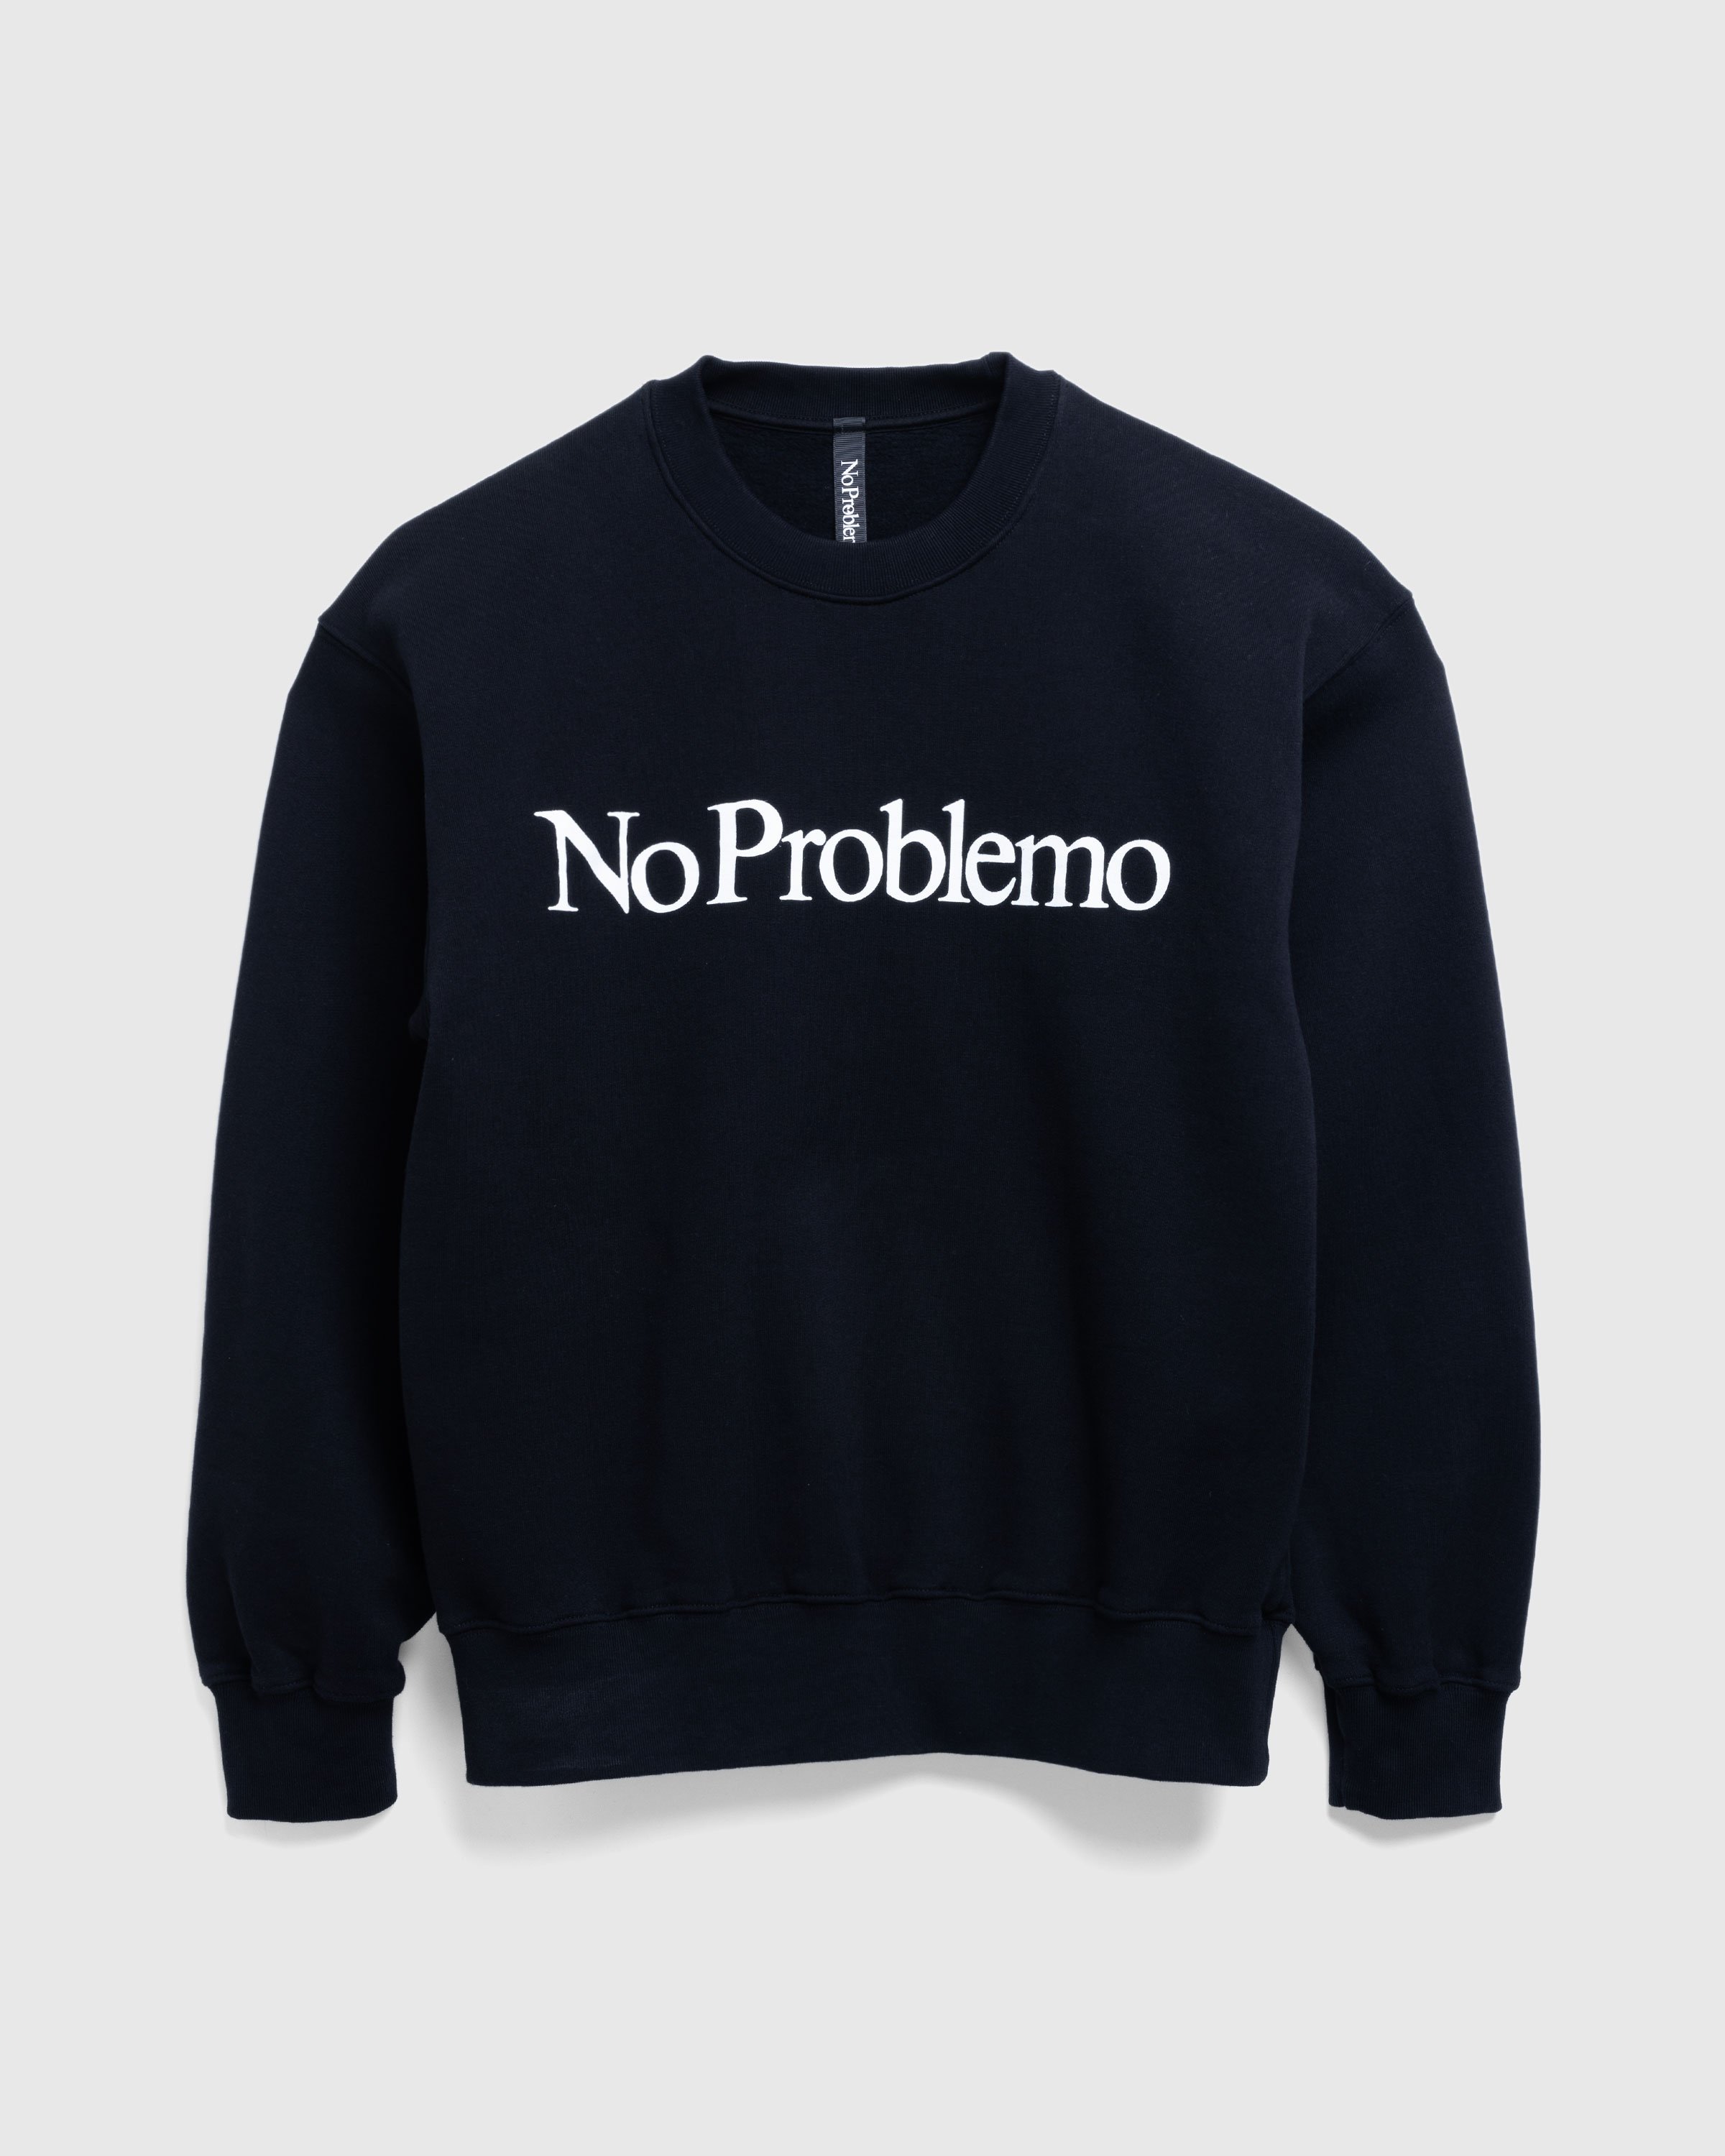 Aries - No Problemo Sweatshirt Black - Clothing - Black - Image 1